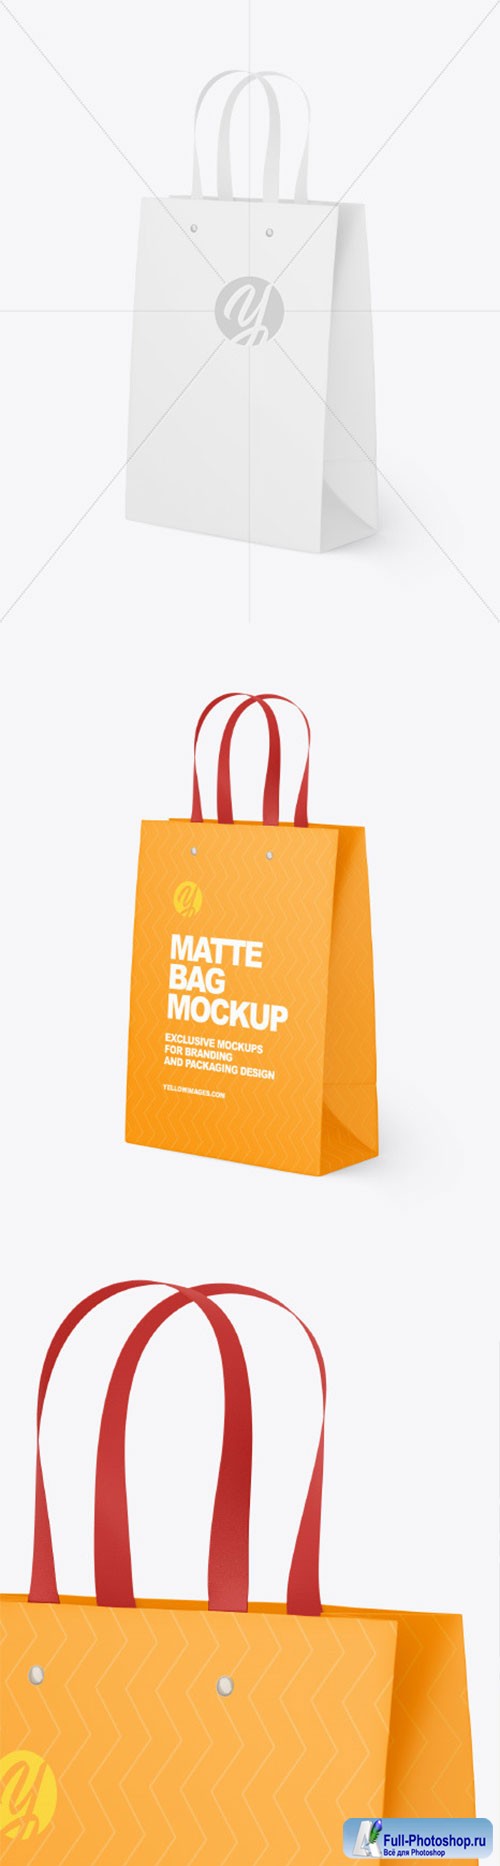 Matte Paper Bag Mockup 86559